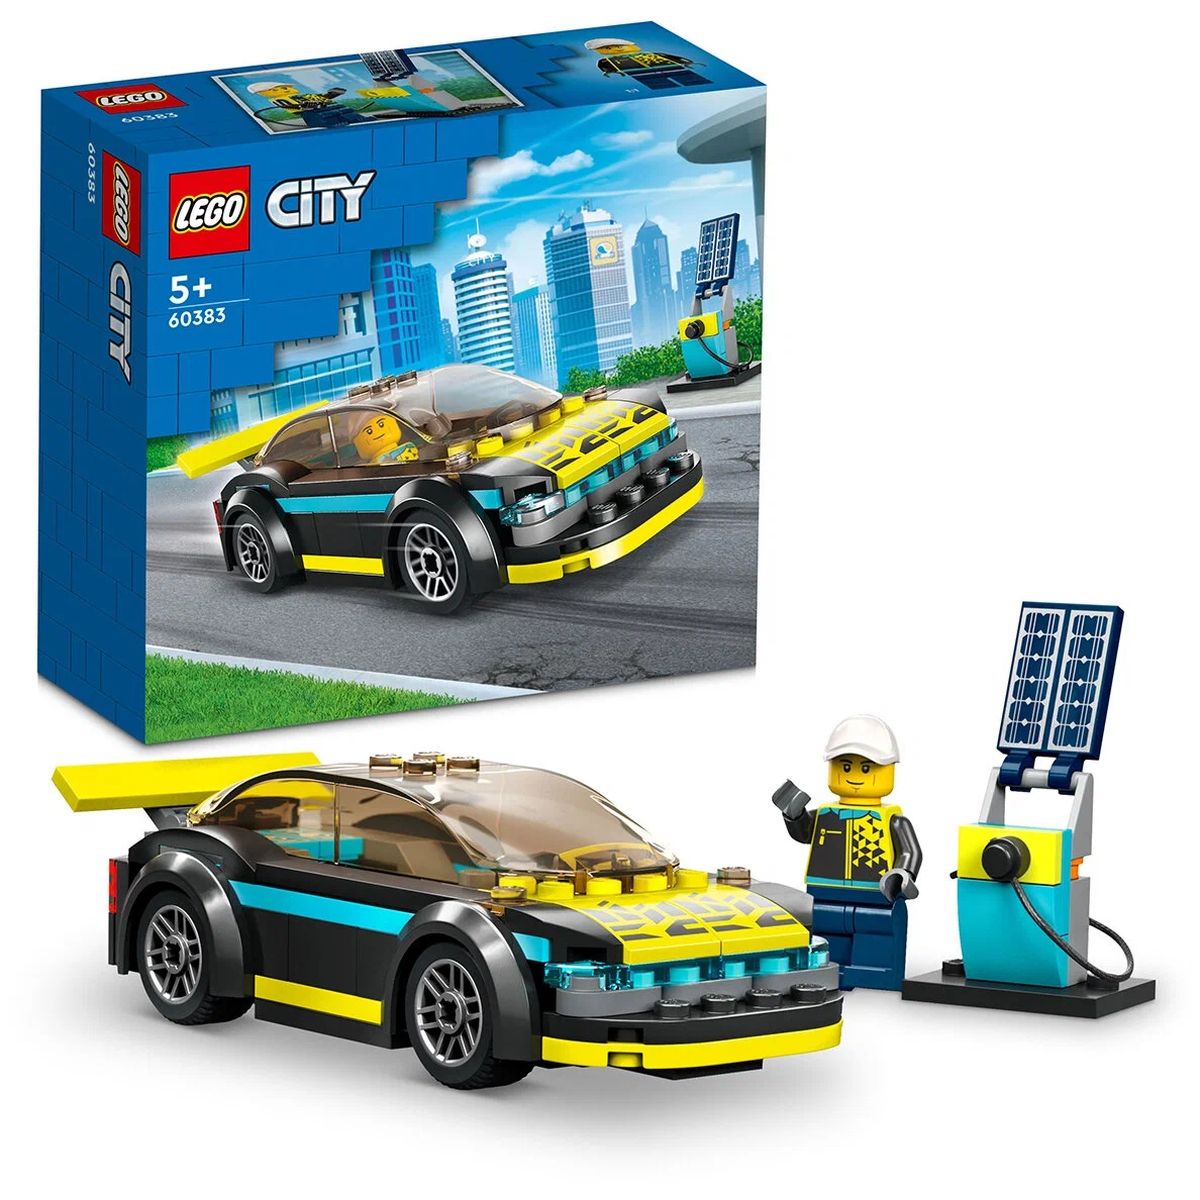 Конструктор LEGO City Электрический спорткар, 95 деталей, 60383 чайник электрический tdm electric нептун 1 8 л 1800 вт скрытый нагревательный элемент стекло